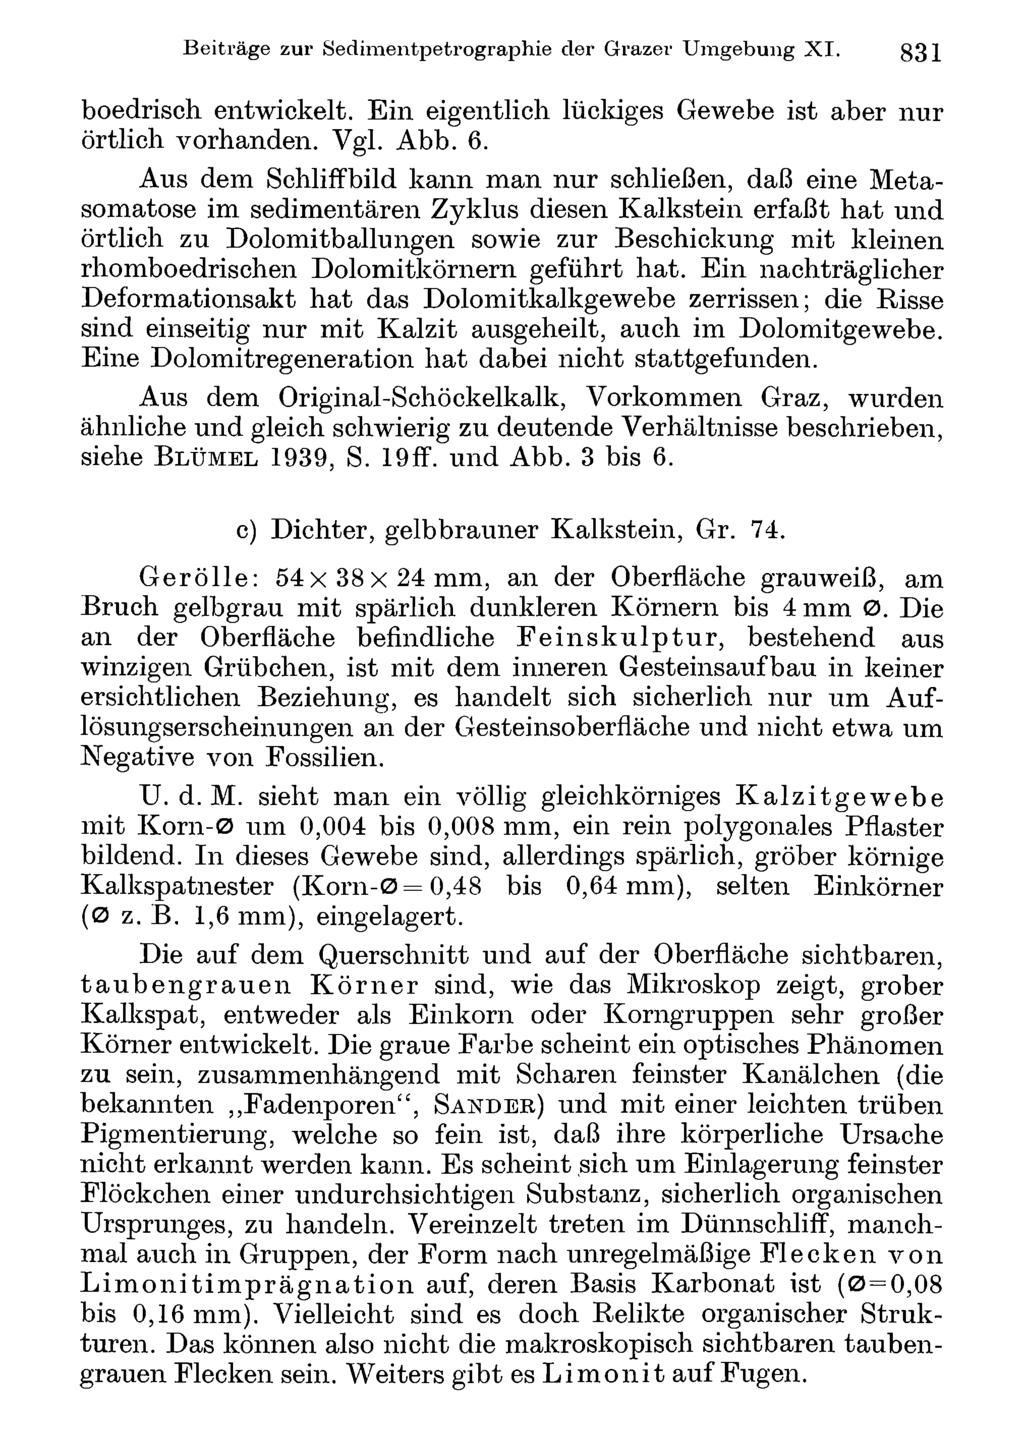 Beiträge Akademie zur Sedimentpetrographie d. Wissenschaften Wien; download der unter Grazer www.biologiezentrum.at Umgebung XI. 831 boedrisch entwickelt.